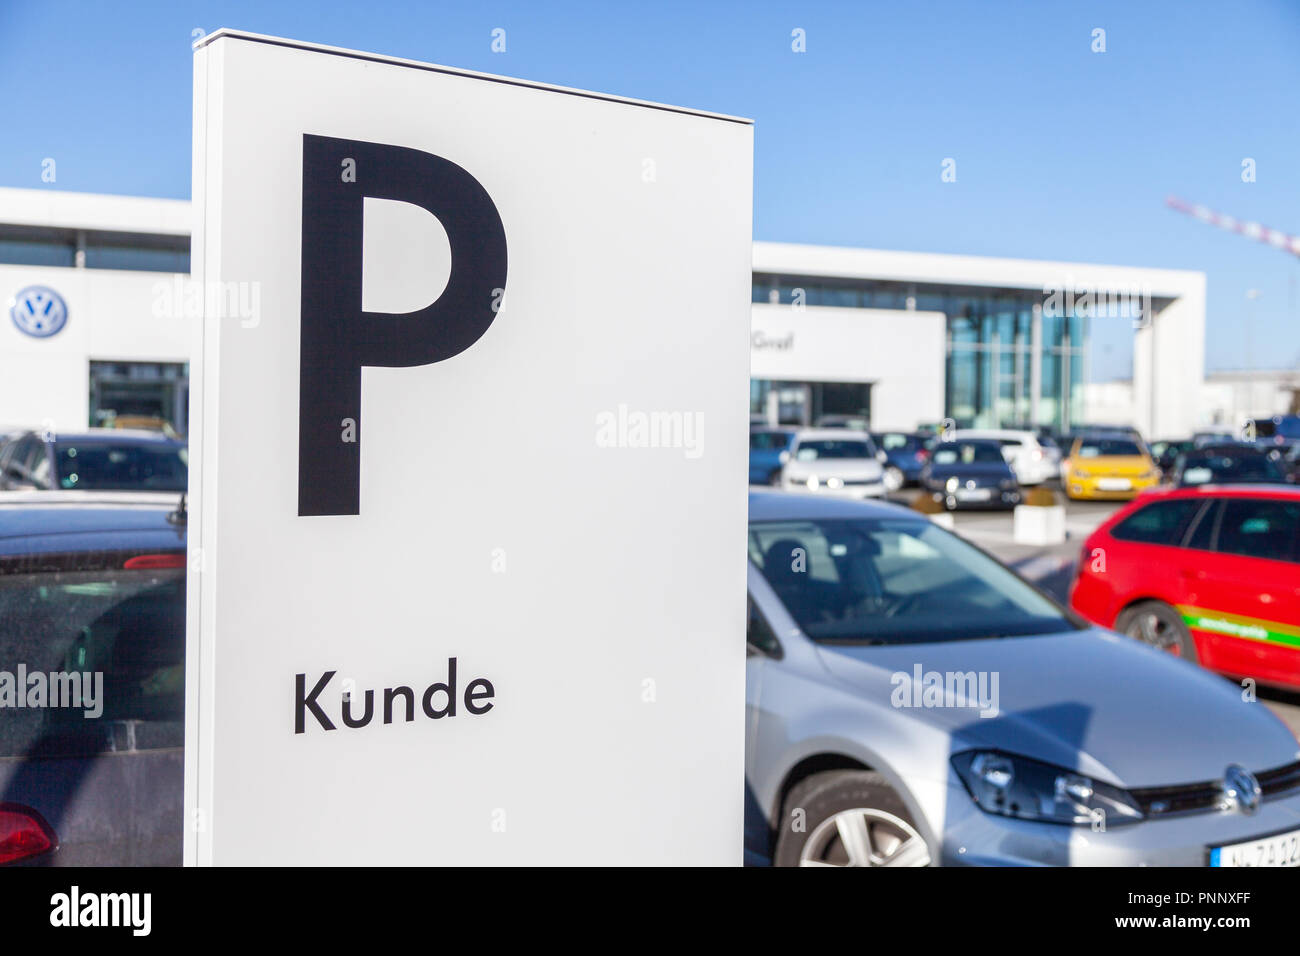 Fürth/Deutschland - am 25. FEBRUAR 2018: Parkplatz Schild in der Nähe ein Volkswagen Autohaus. Kunde werden Kunden. Volkswagen ist ein deutscher Autohersteller gegründet o Stockfoto